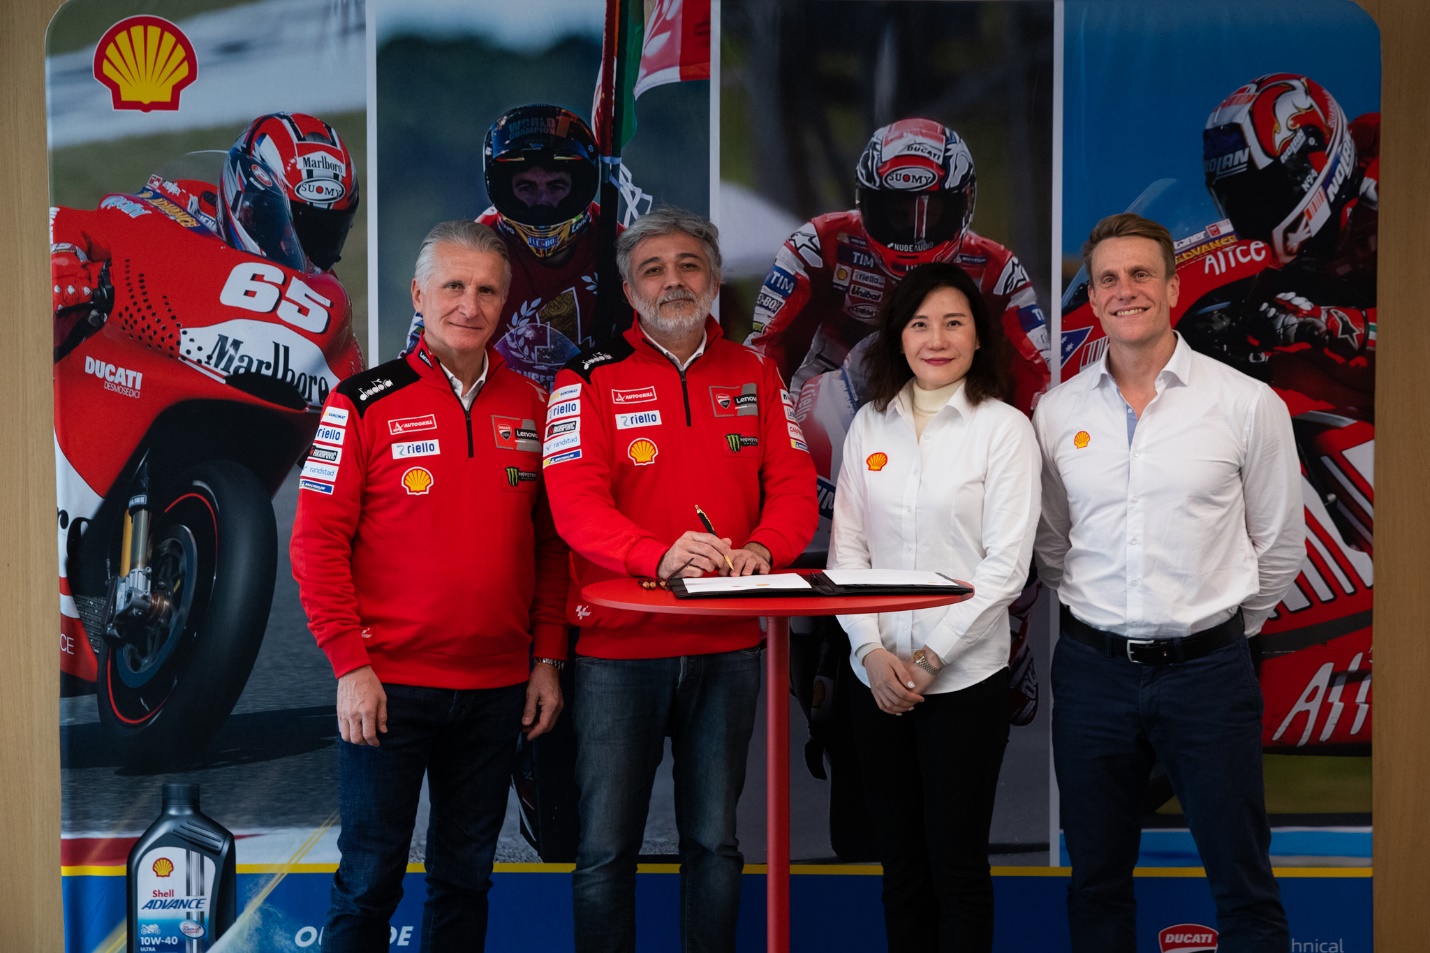 Shell Và Ducati gia hạn quan hệ đối tác kỹ thuật, mở ra kỷ nguyên mới về nhiên liệu bền vững - Ảnh 1.